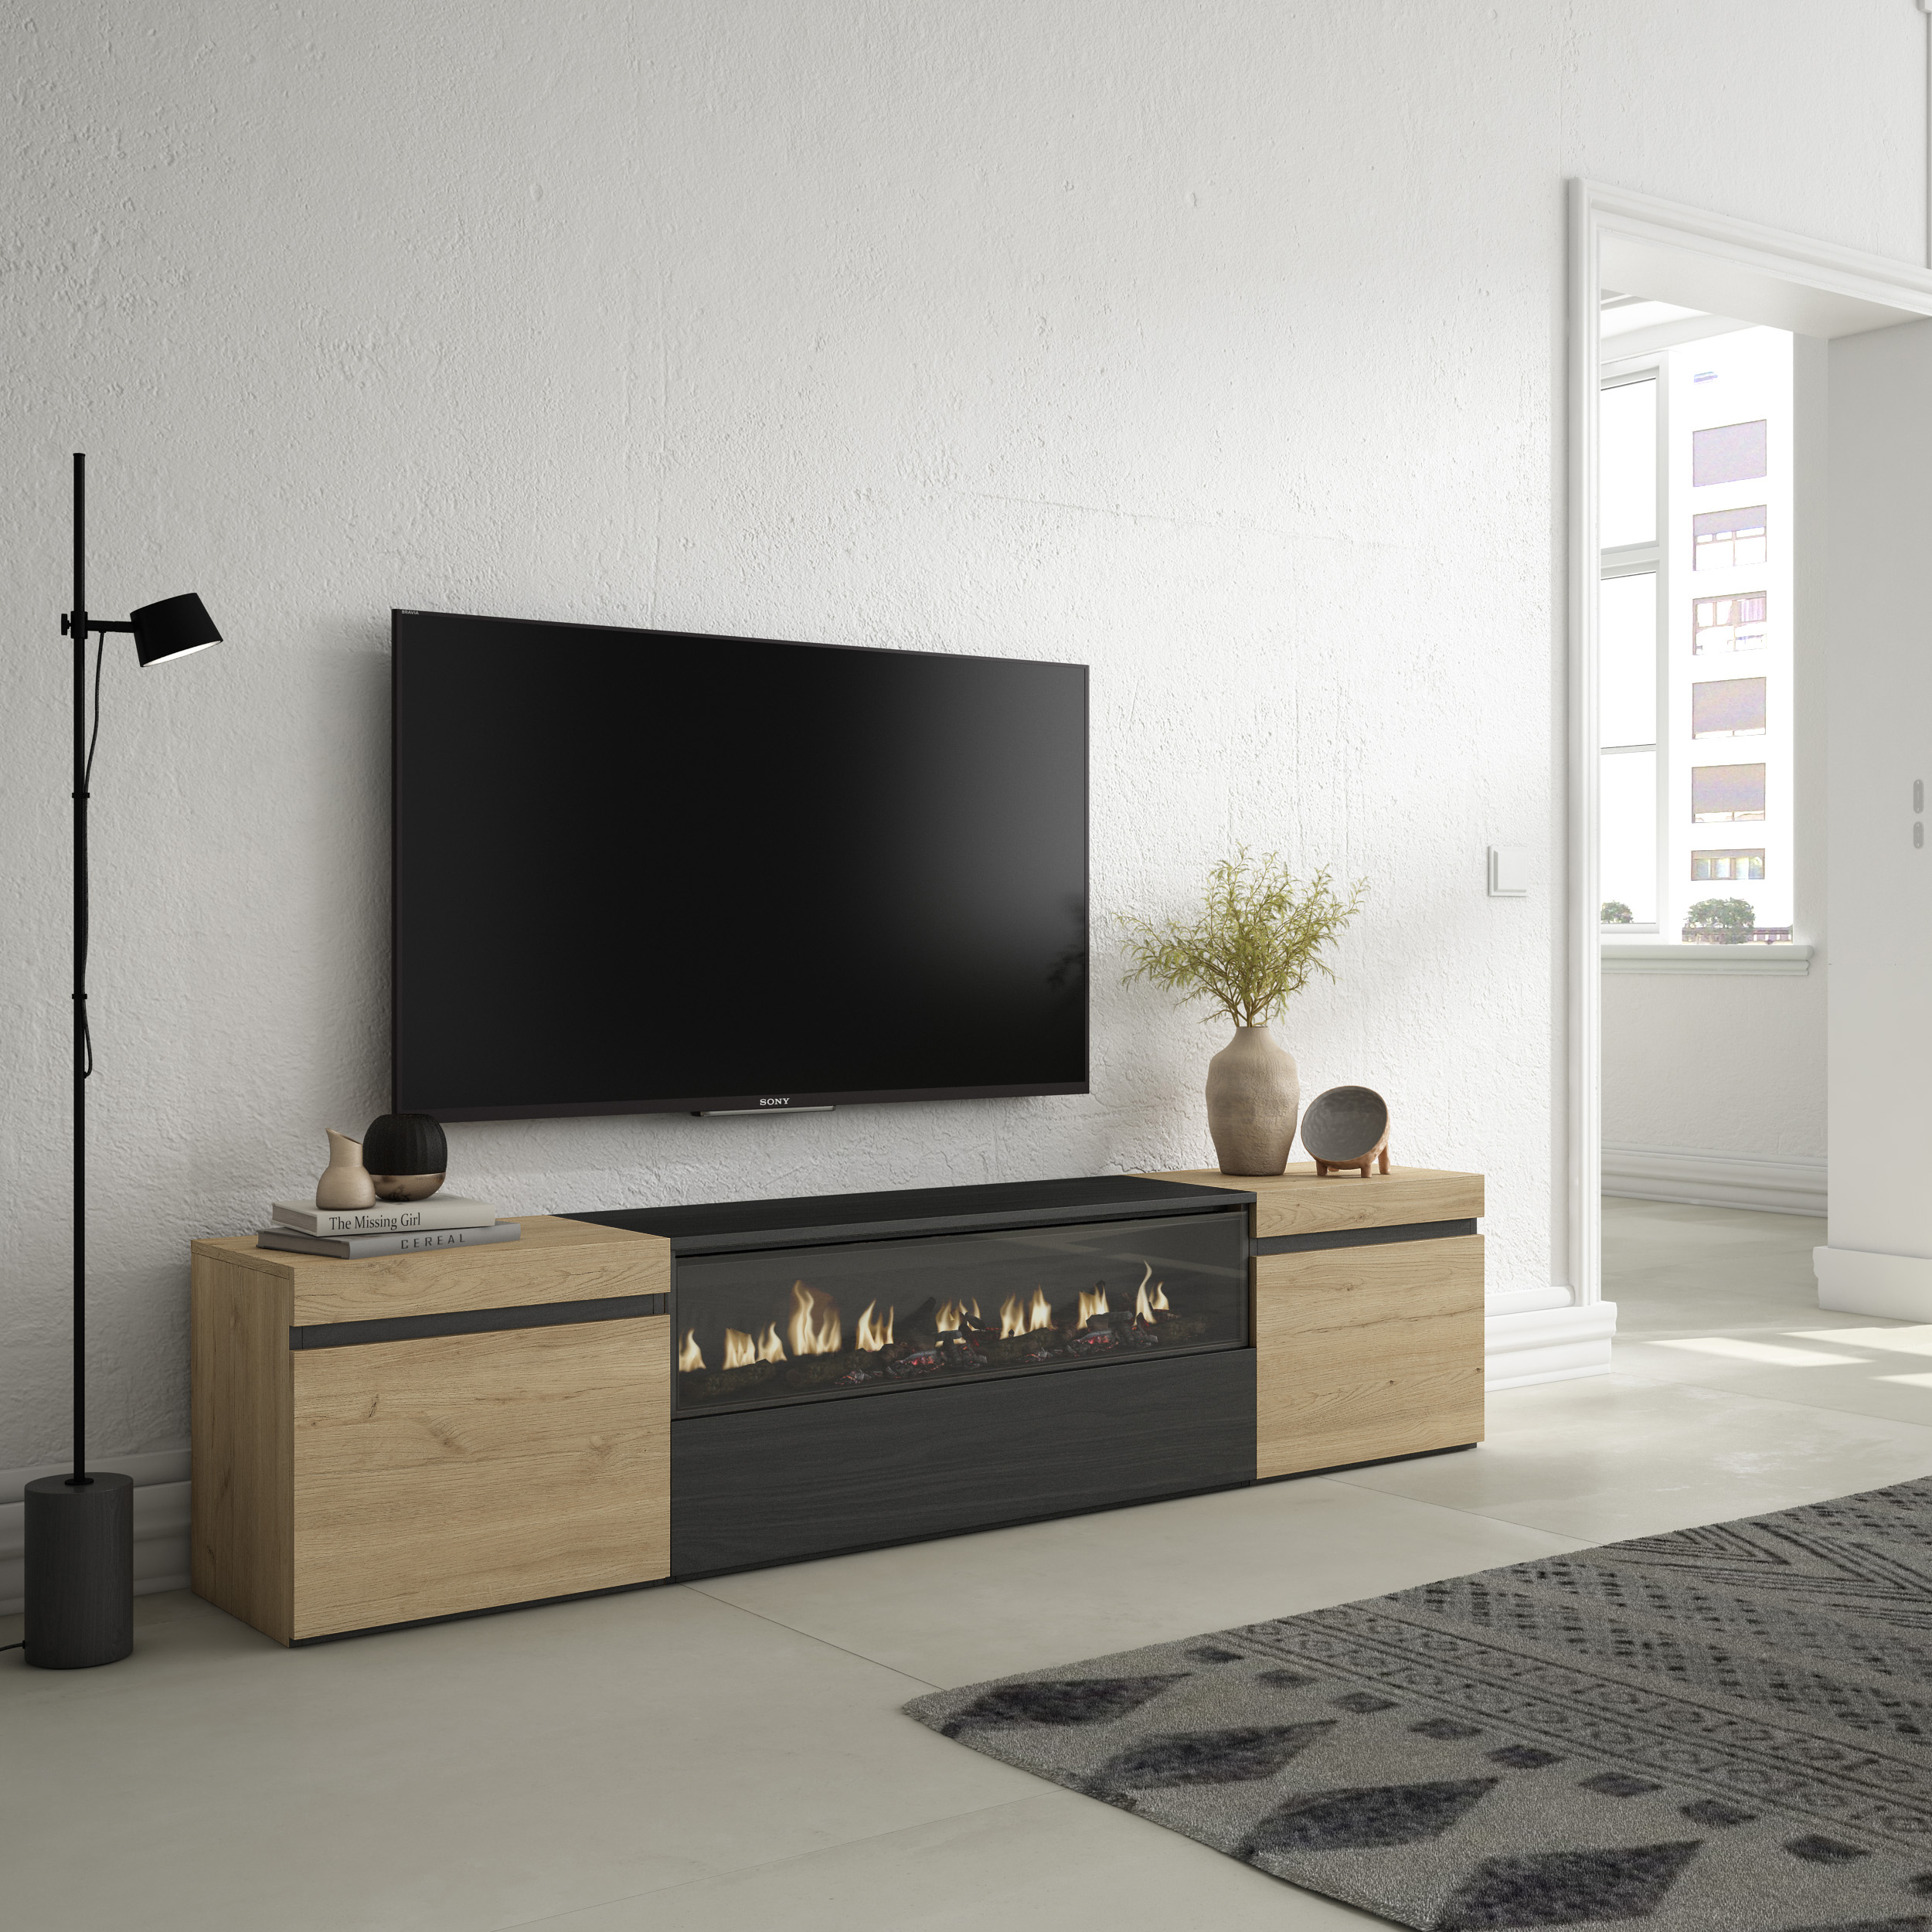 Mueble TV, Televisión, Roble y negro, Chimenea eléctrica LED